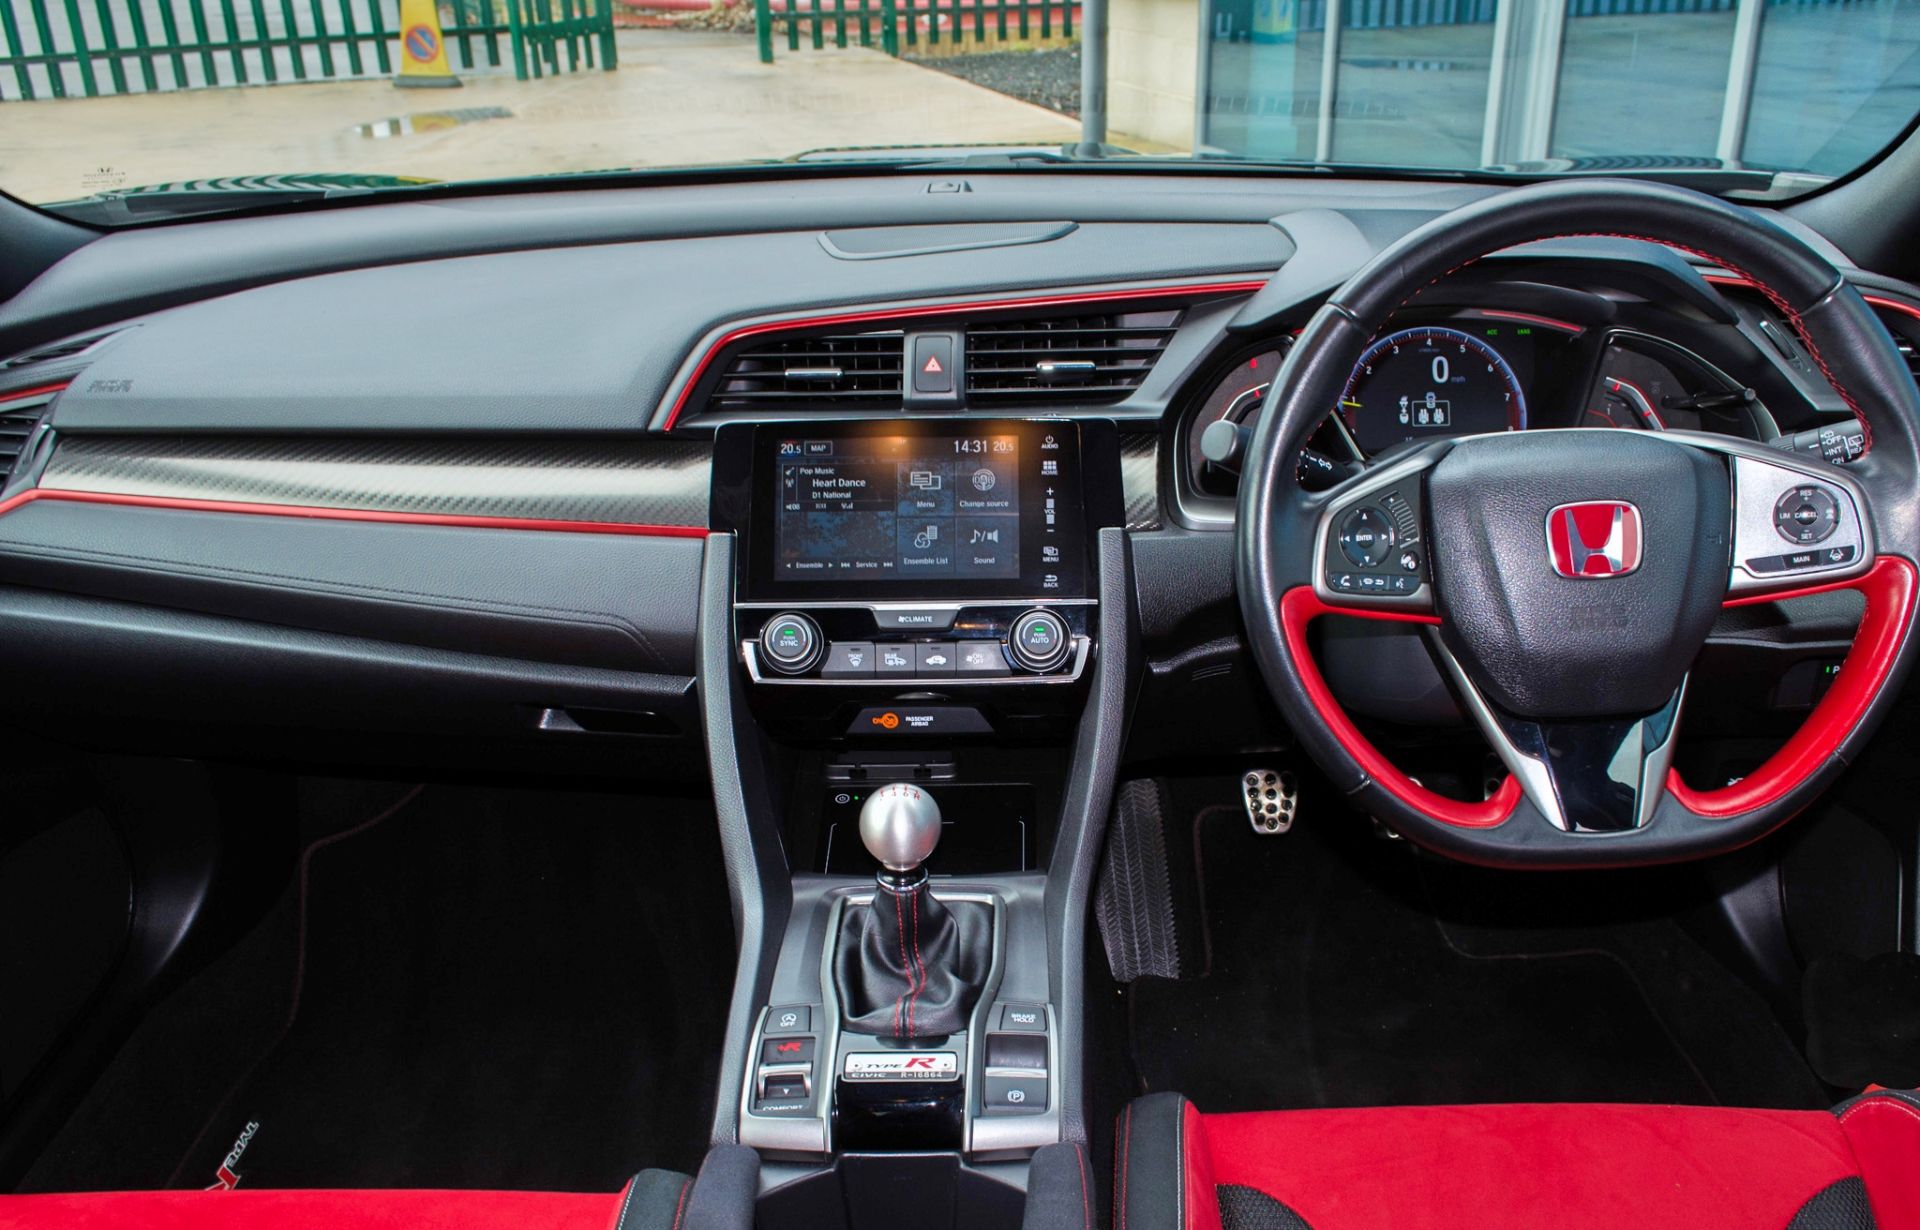 2018 Honda Civic GT Type R V-Tec 5 door hatchback Registration: DU68YHN Odometer: 16,429 Colour: - Image 41 of 54